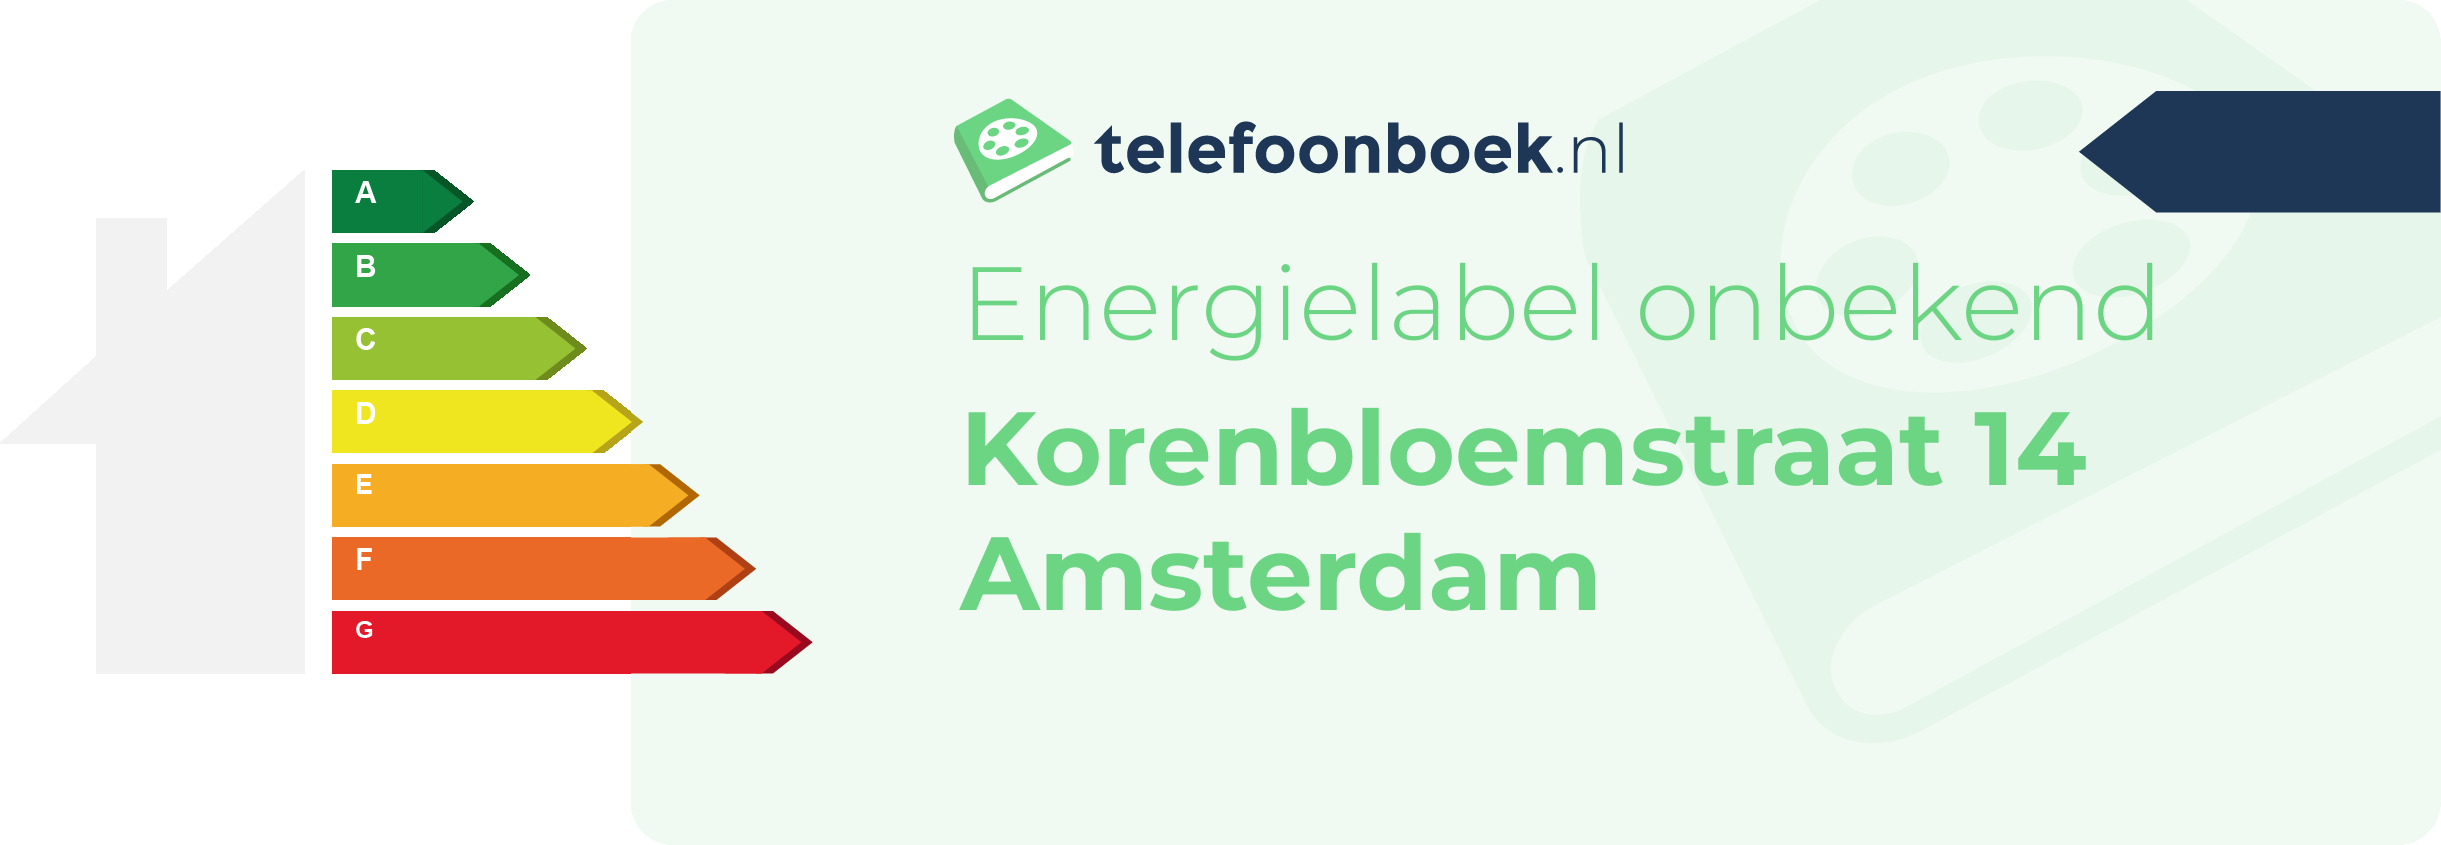 Energielabel Korenbloemstraat 14 Amsterdam